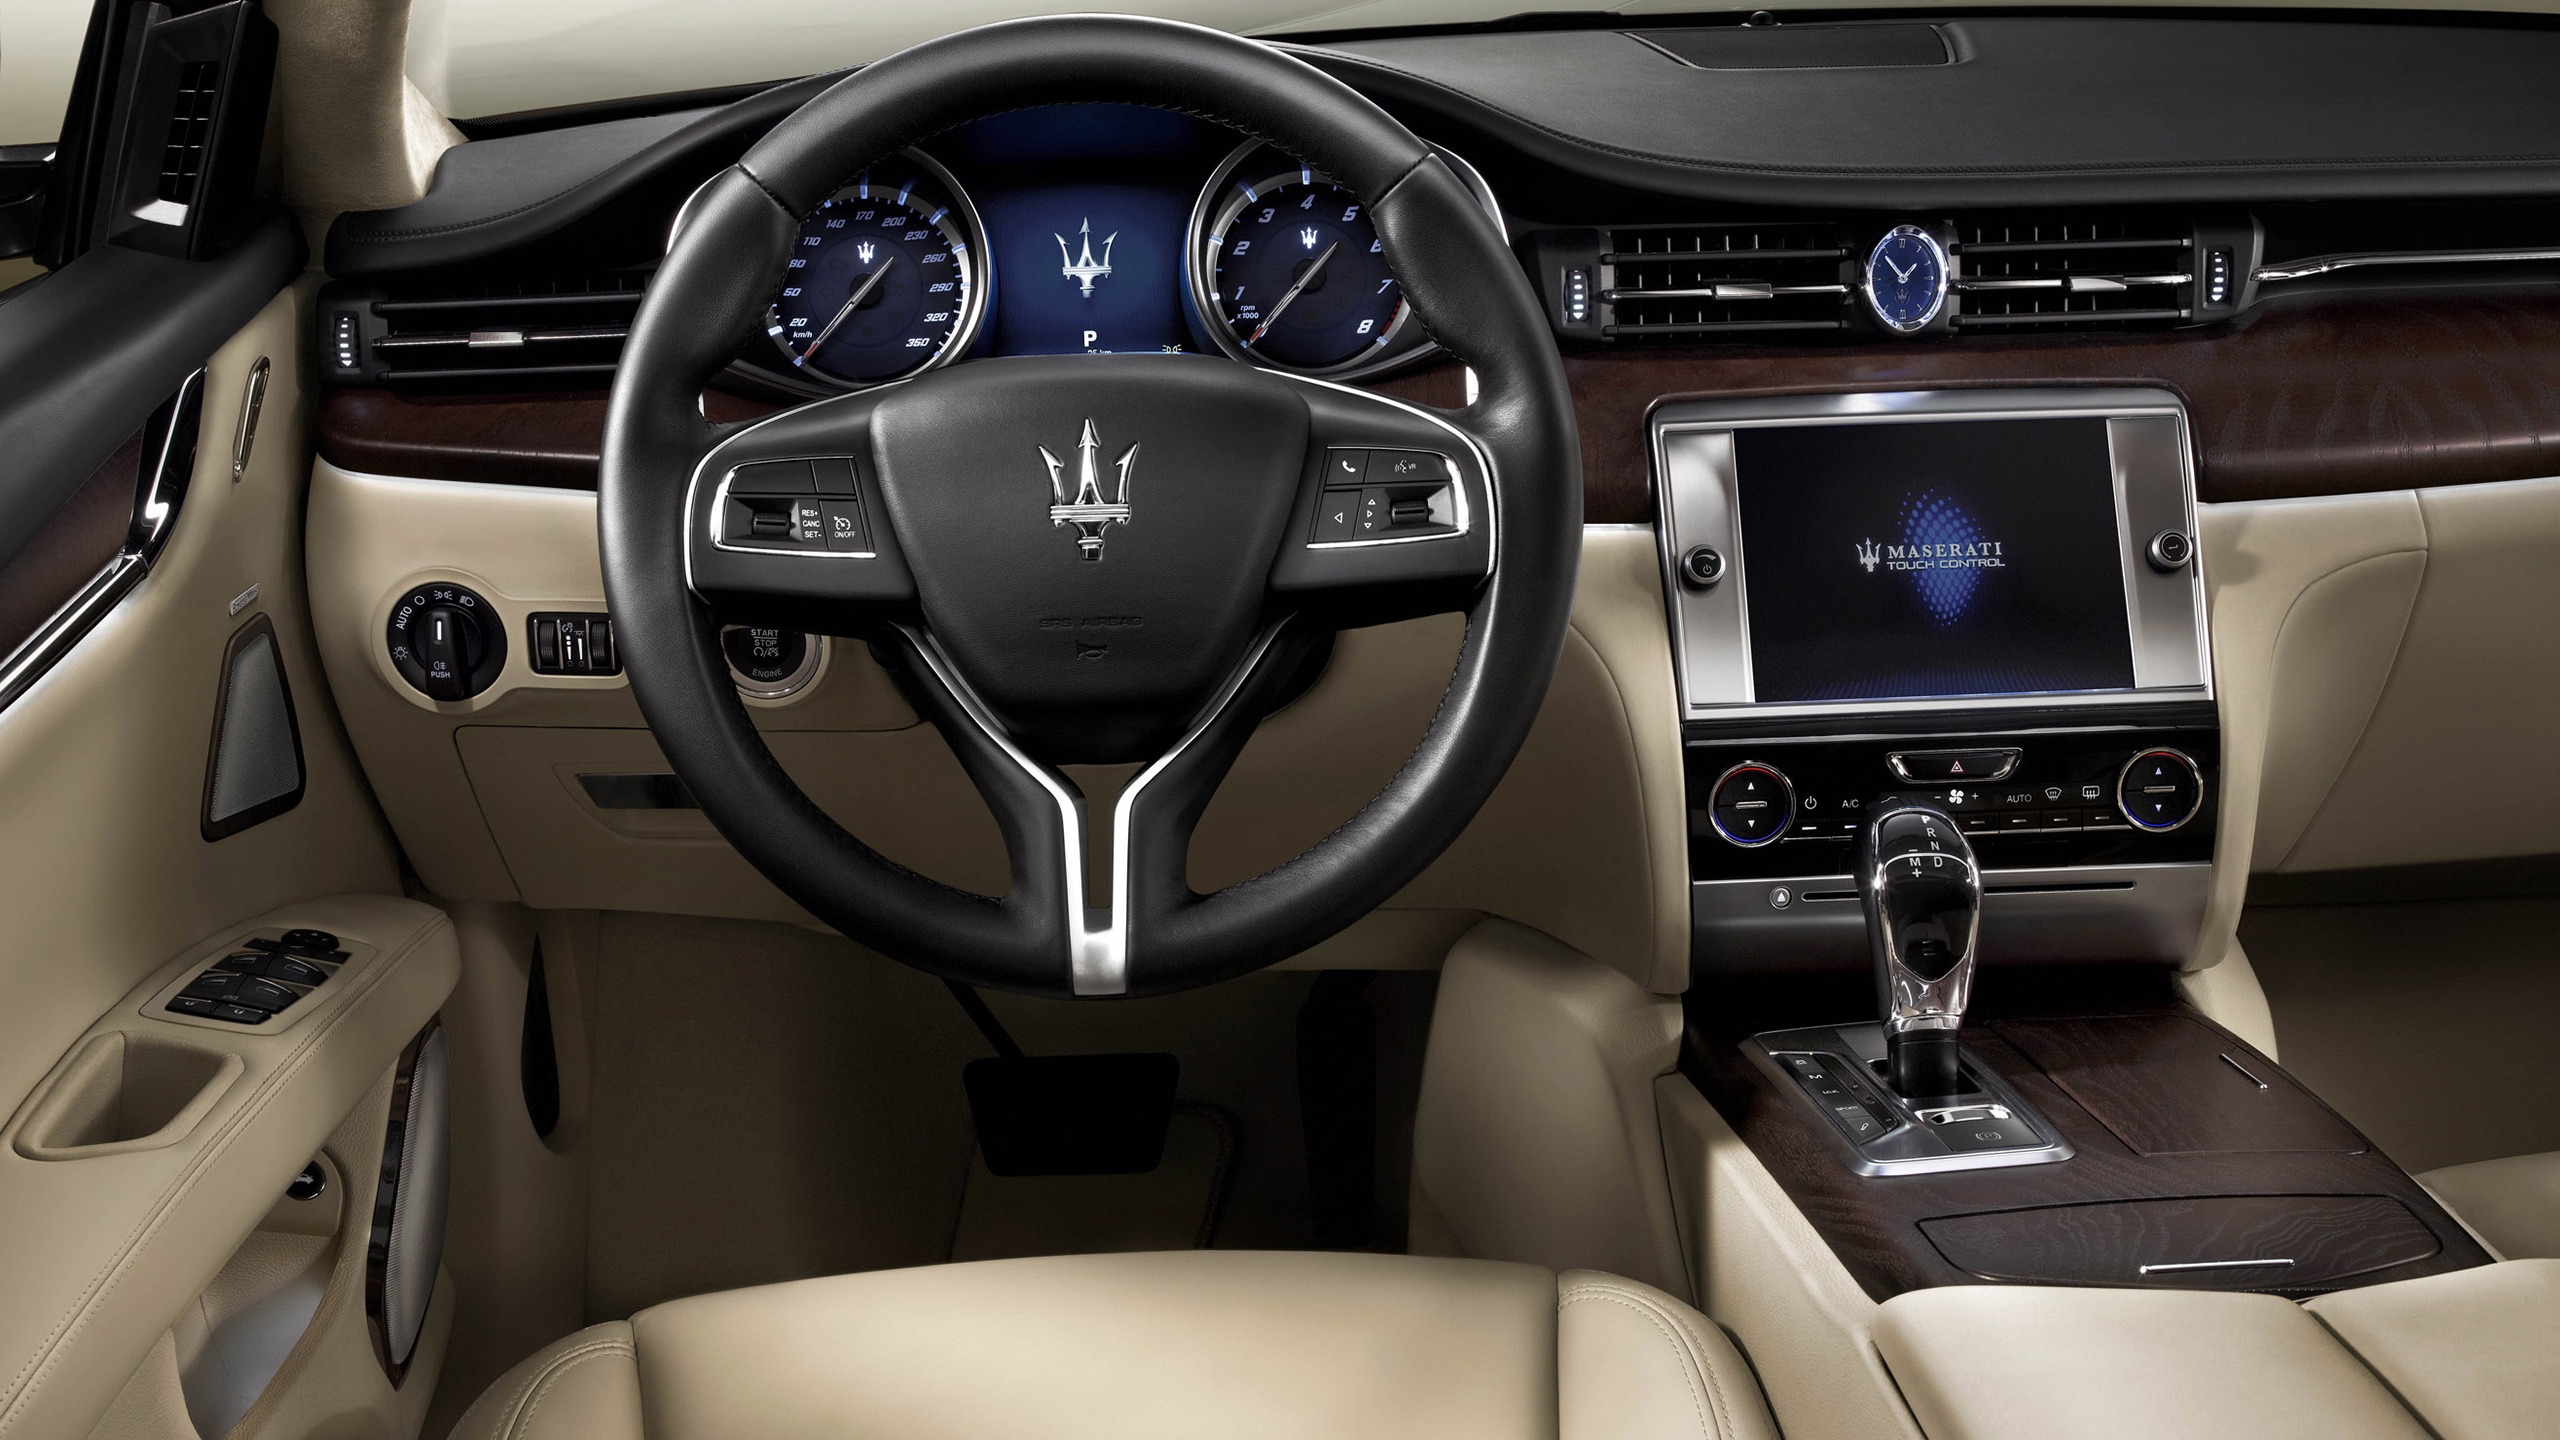 Interior of Maserati Quattroporte for 2560x1440 HDTV resolution